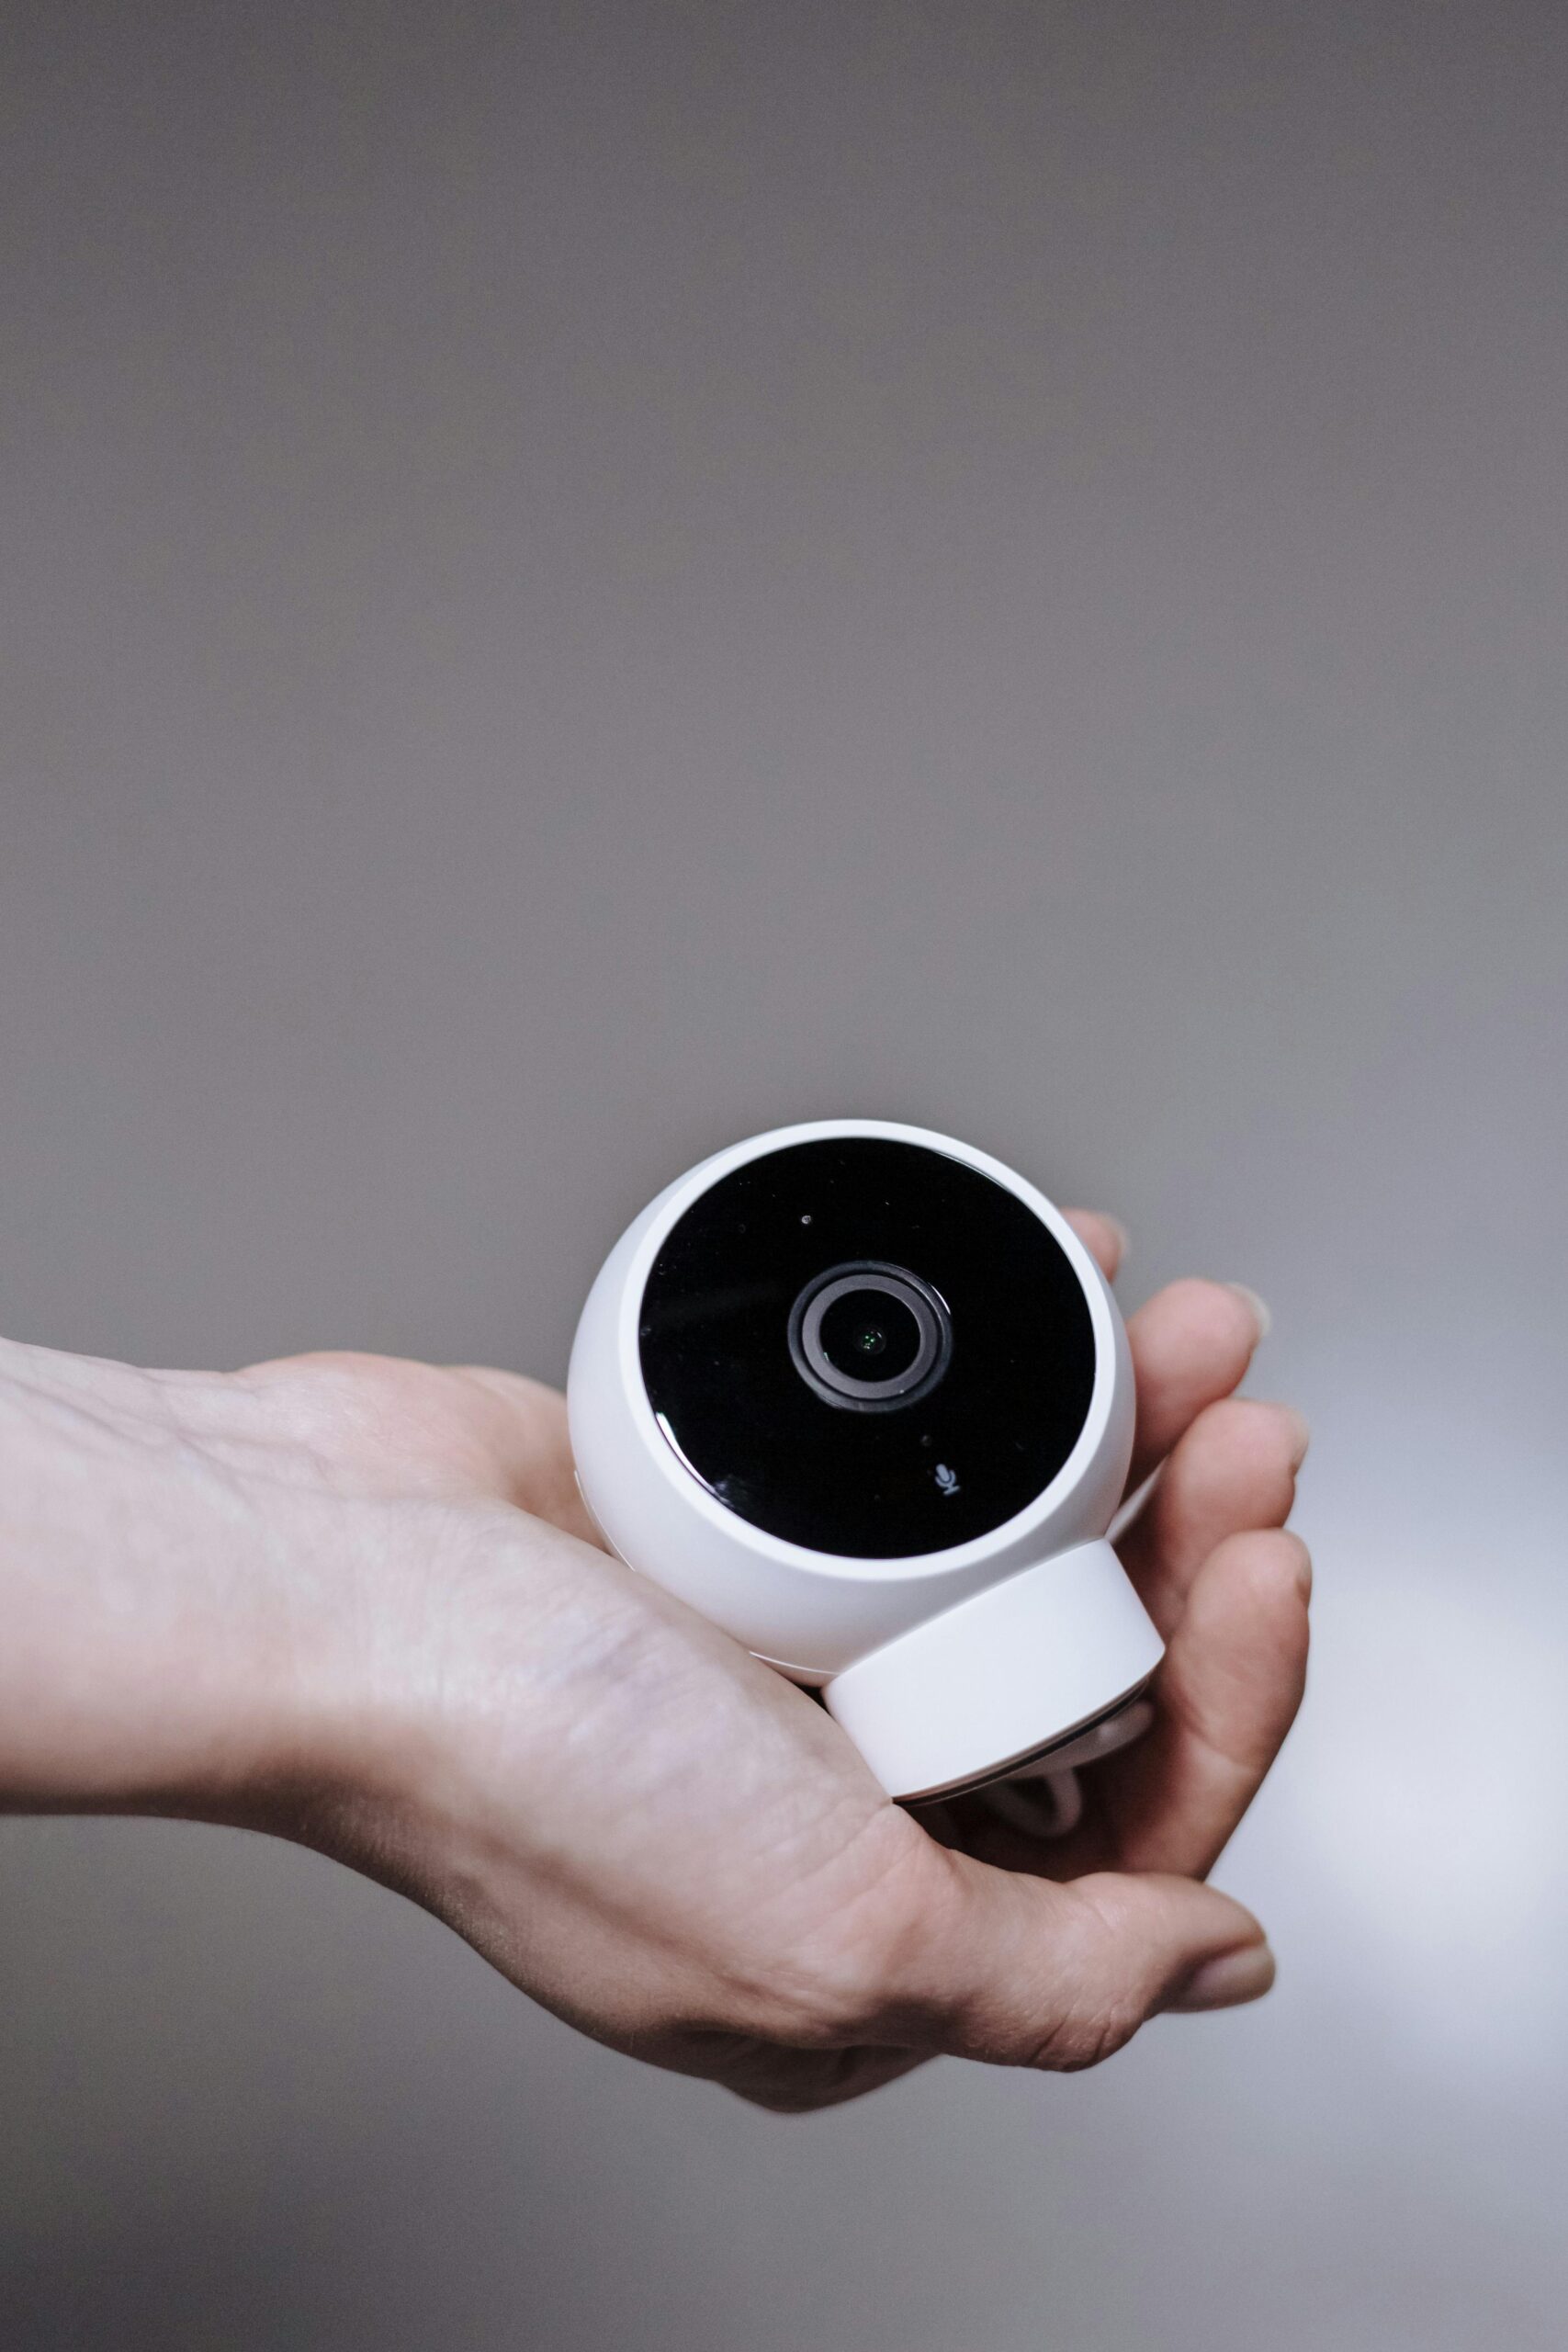 Come posso configurare un sistema di videosorveglianza smart per la mia casa?